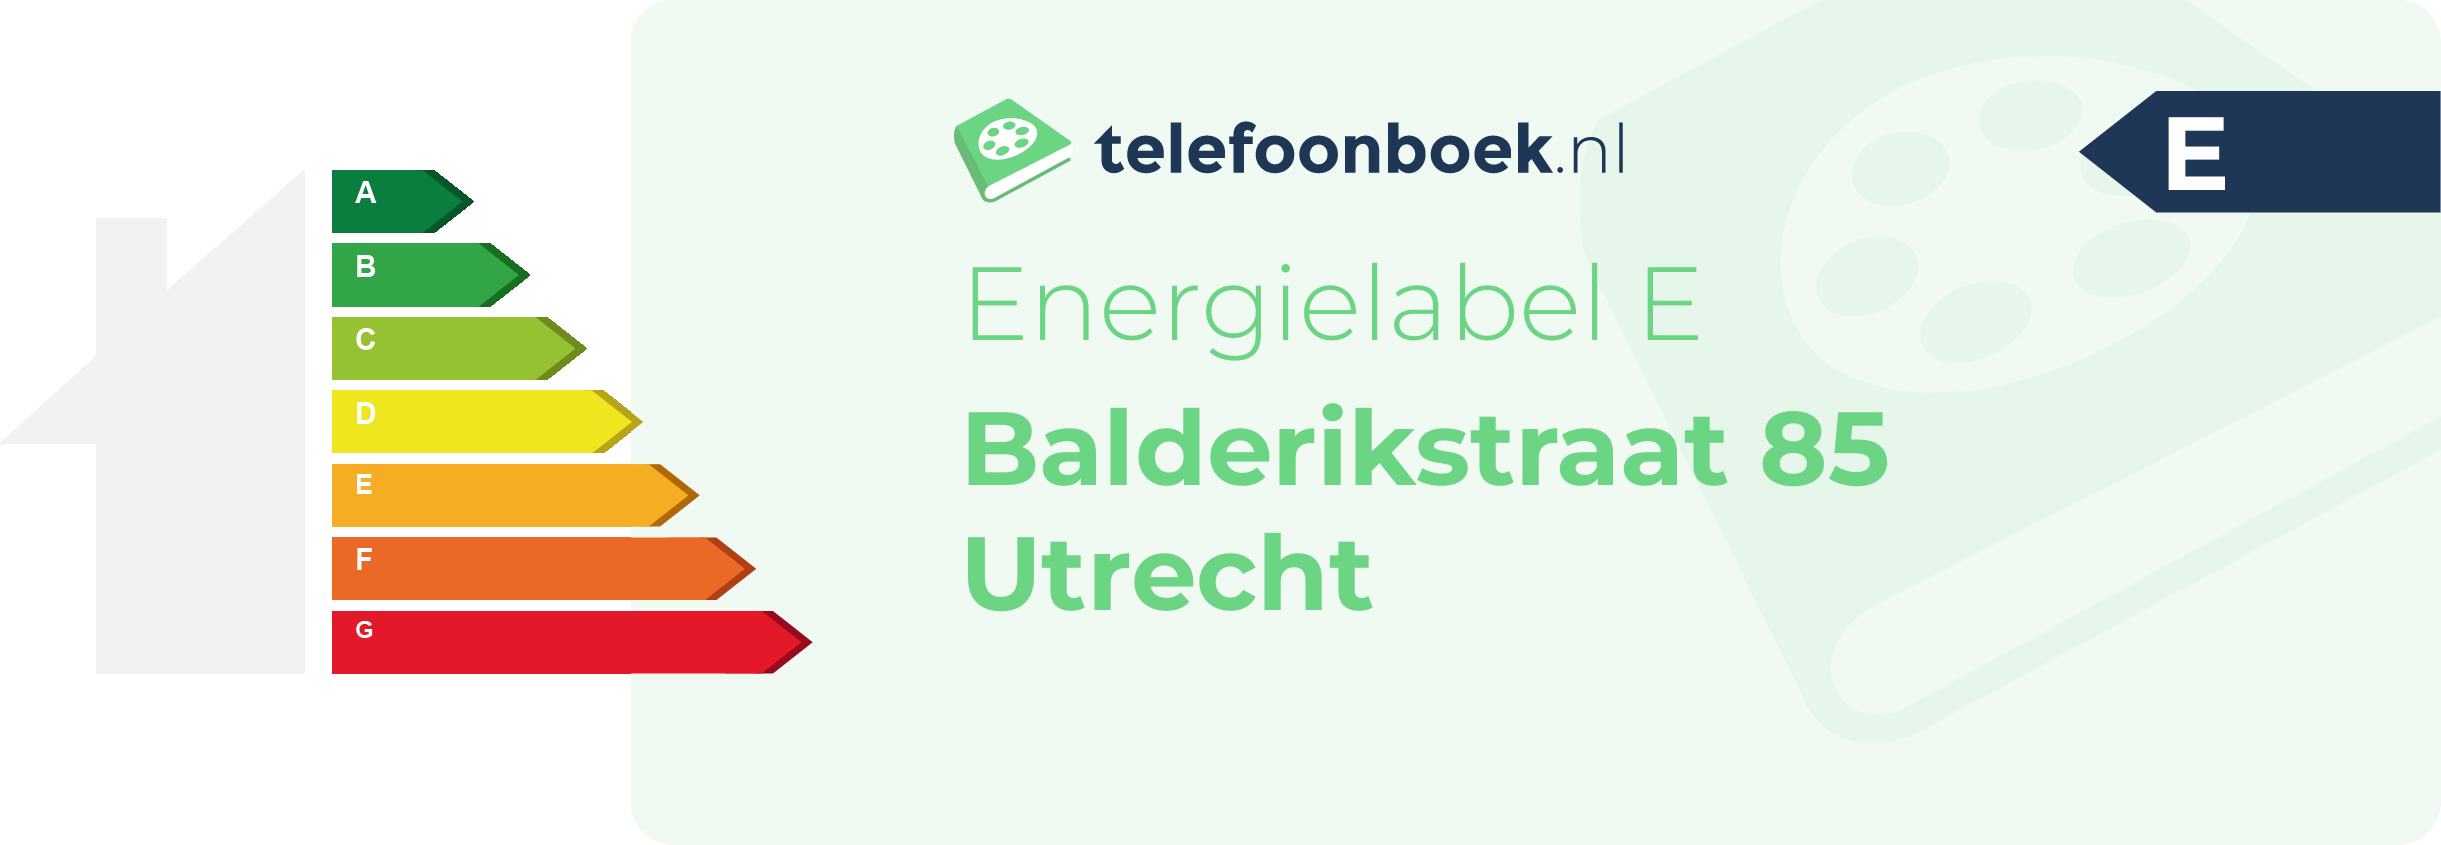 Energielabel Balderikstraat 85 Utrecht